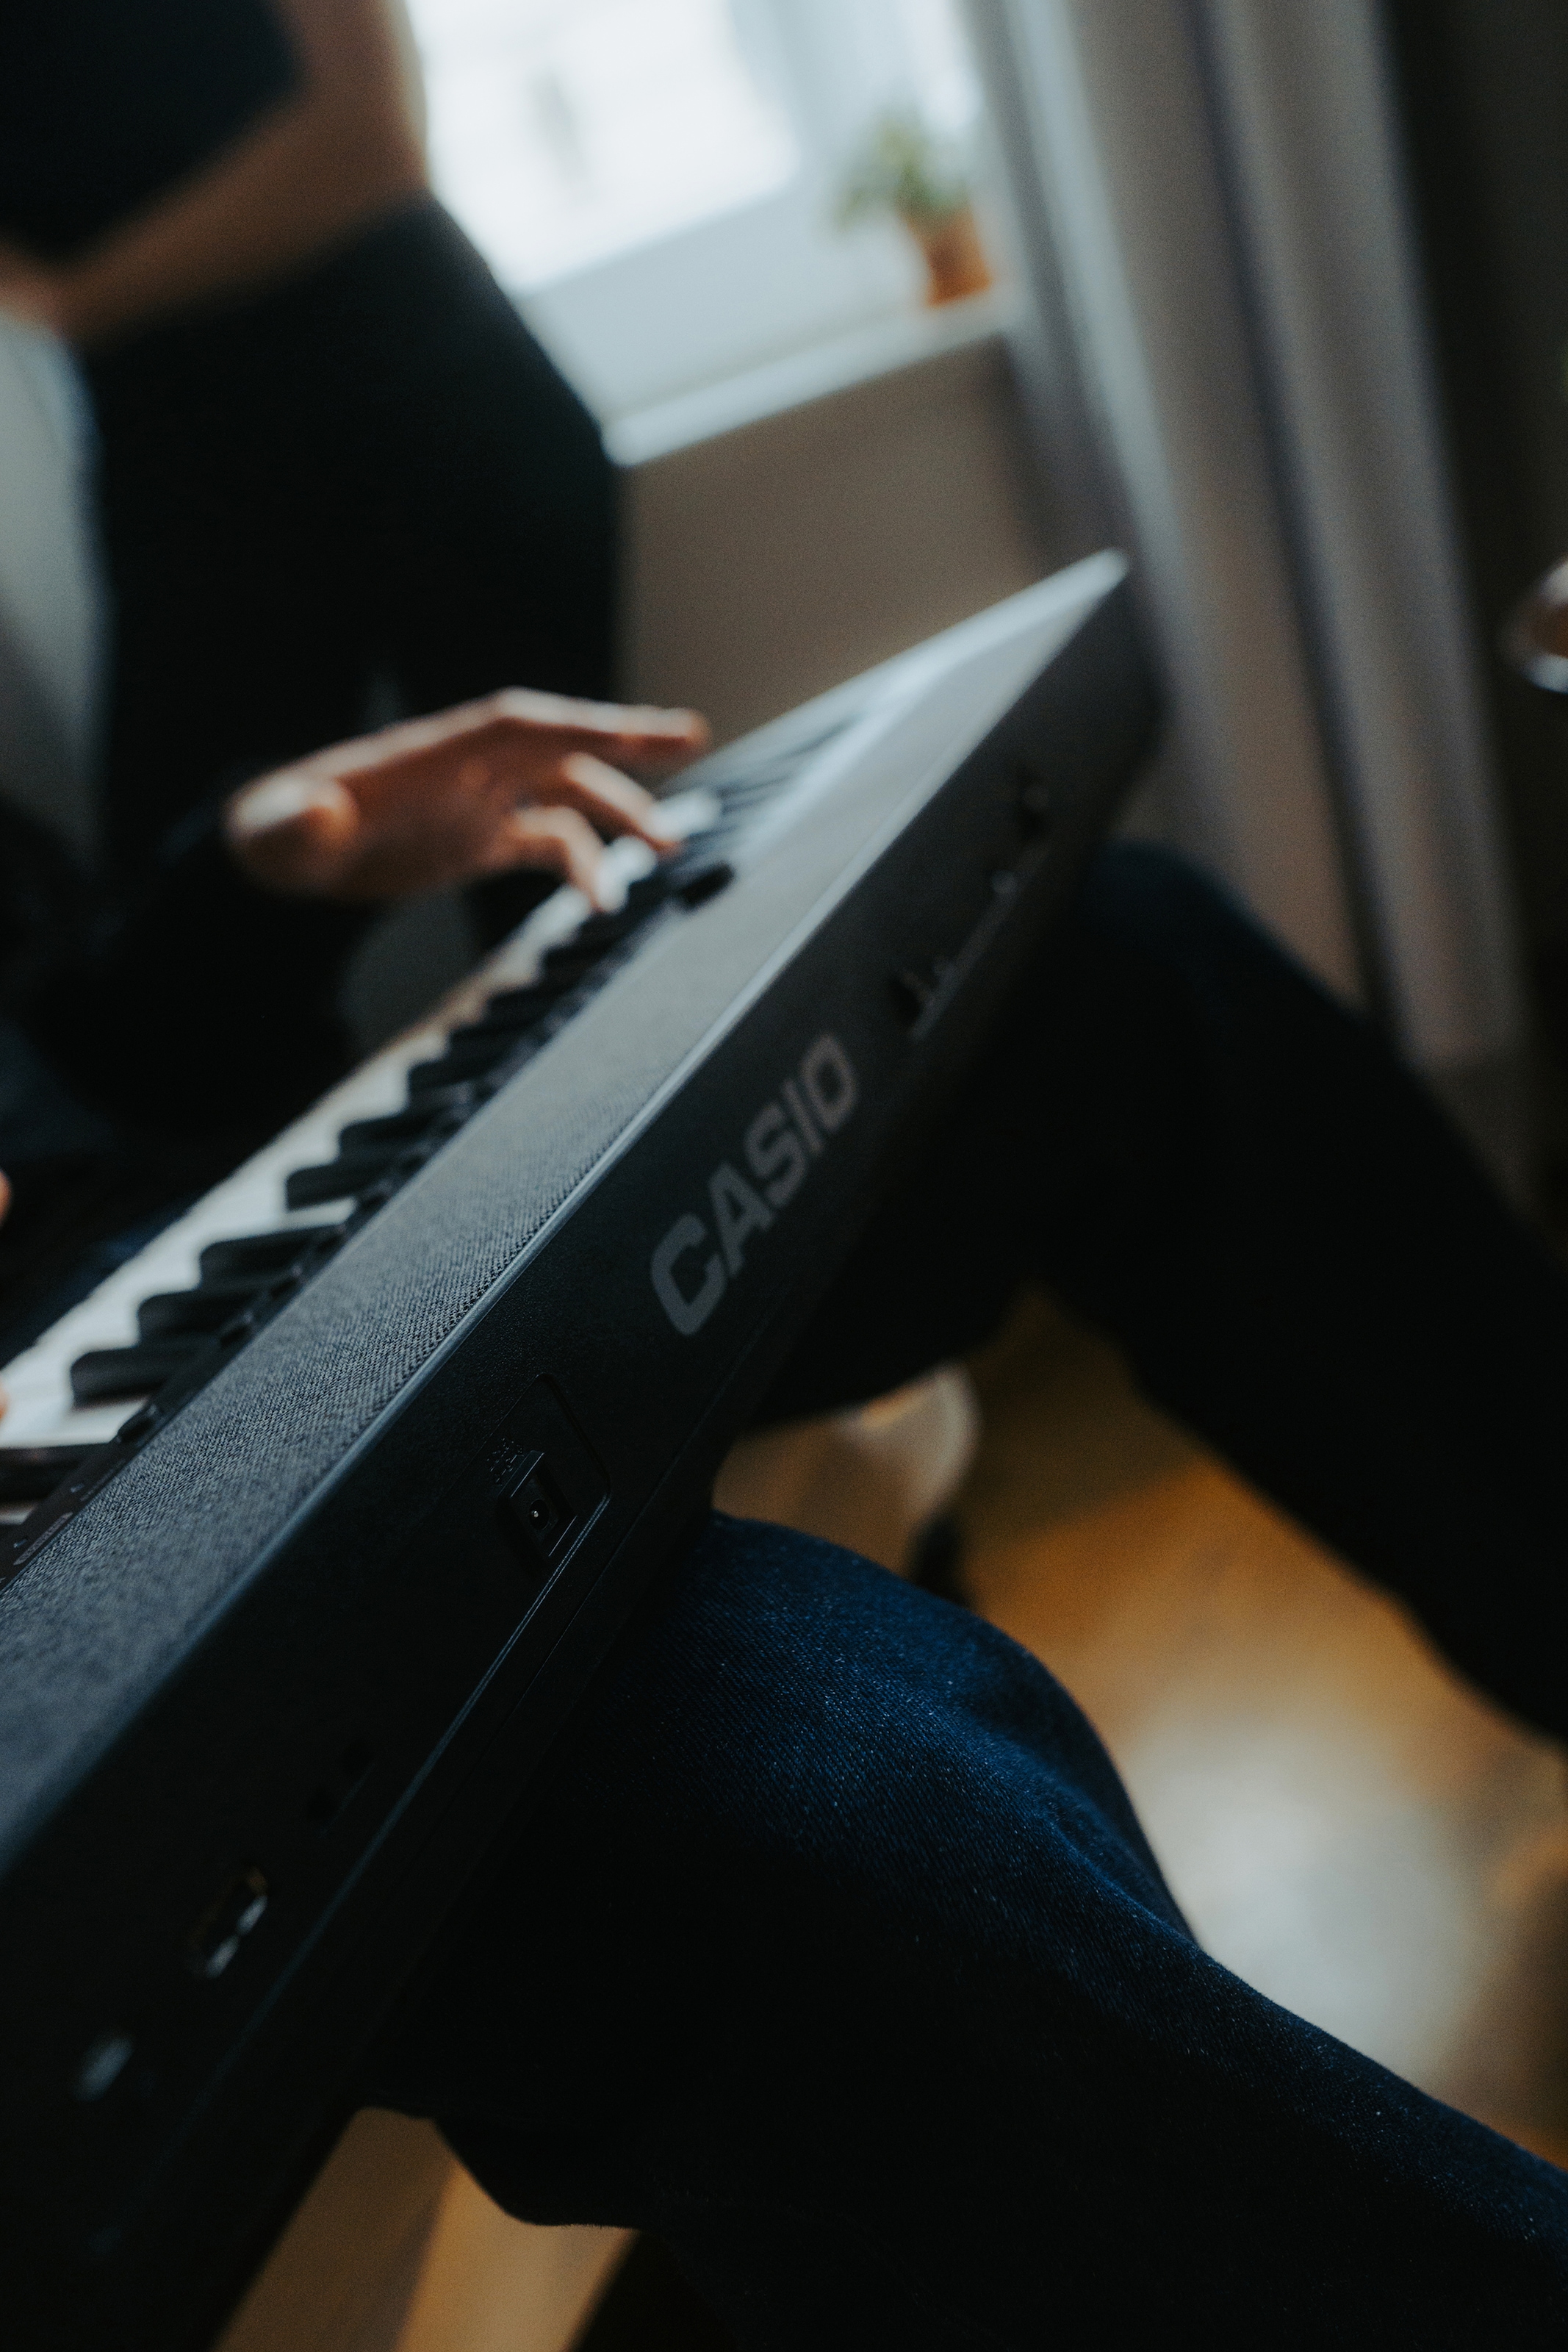 CASIO Home-Keyboard »Piano-Keyboard-Set CT-S1BKSET«, (Set, inkl. Keyboardständer, Sustainpedal und Netzteil), ideal für Piano-Einsteiger und Klanggourmets;